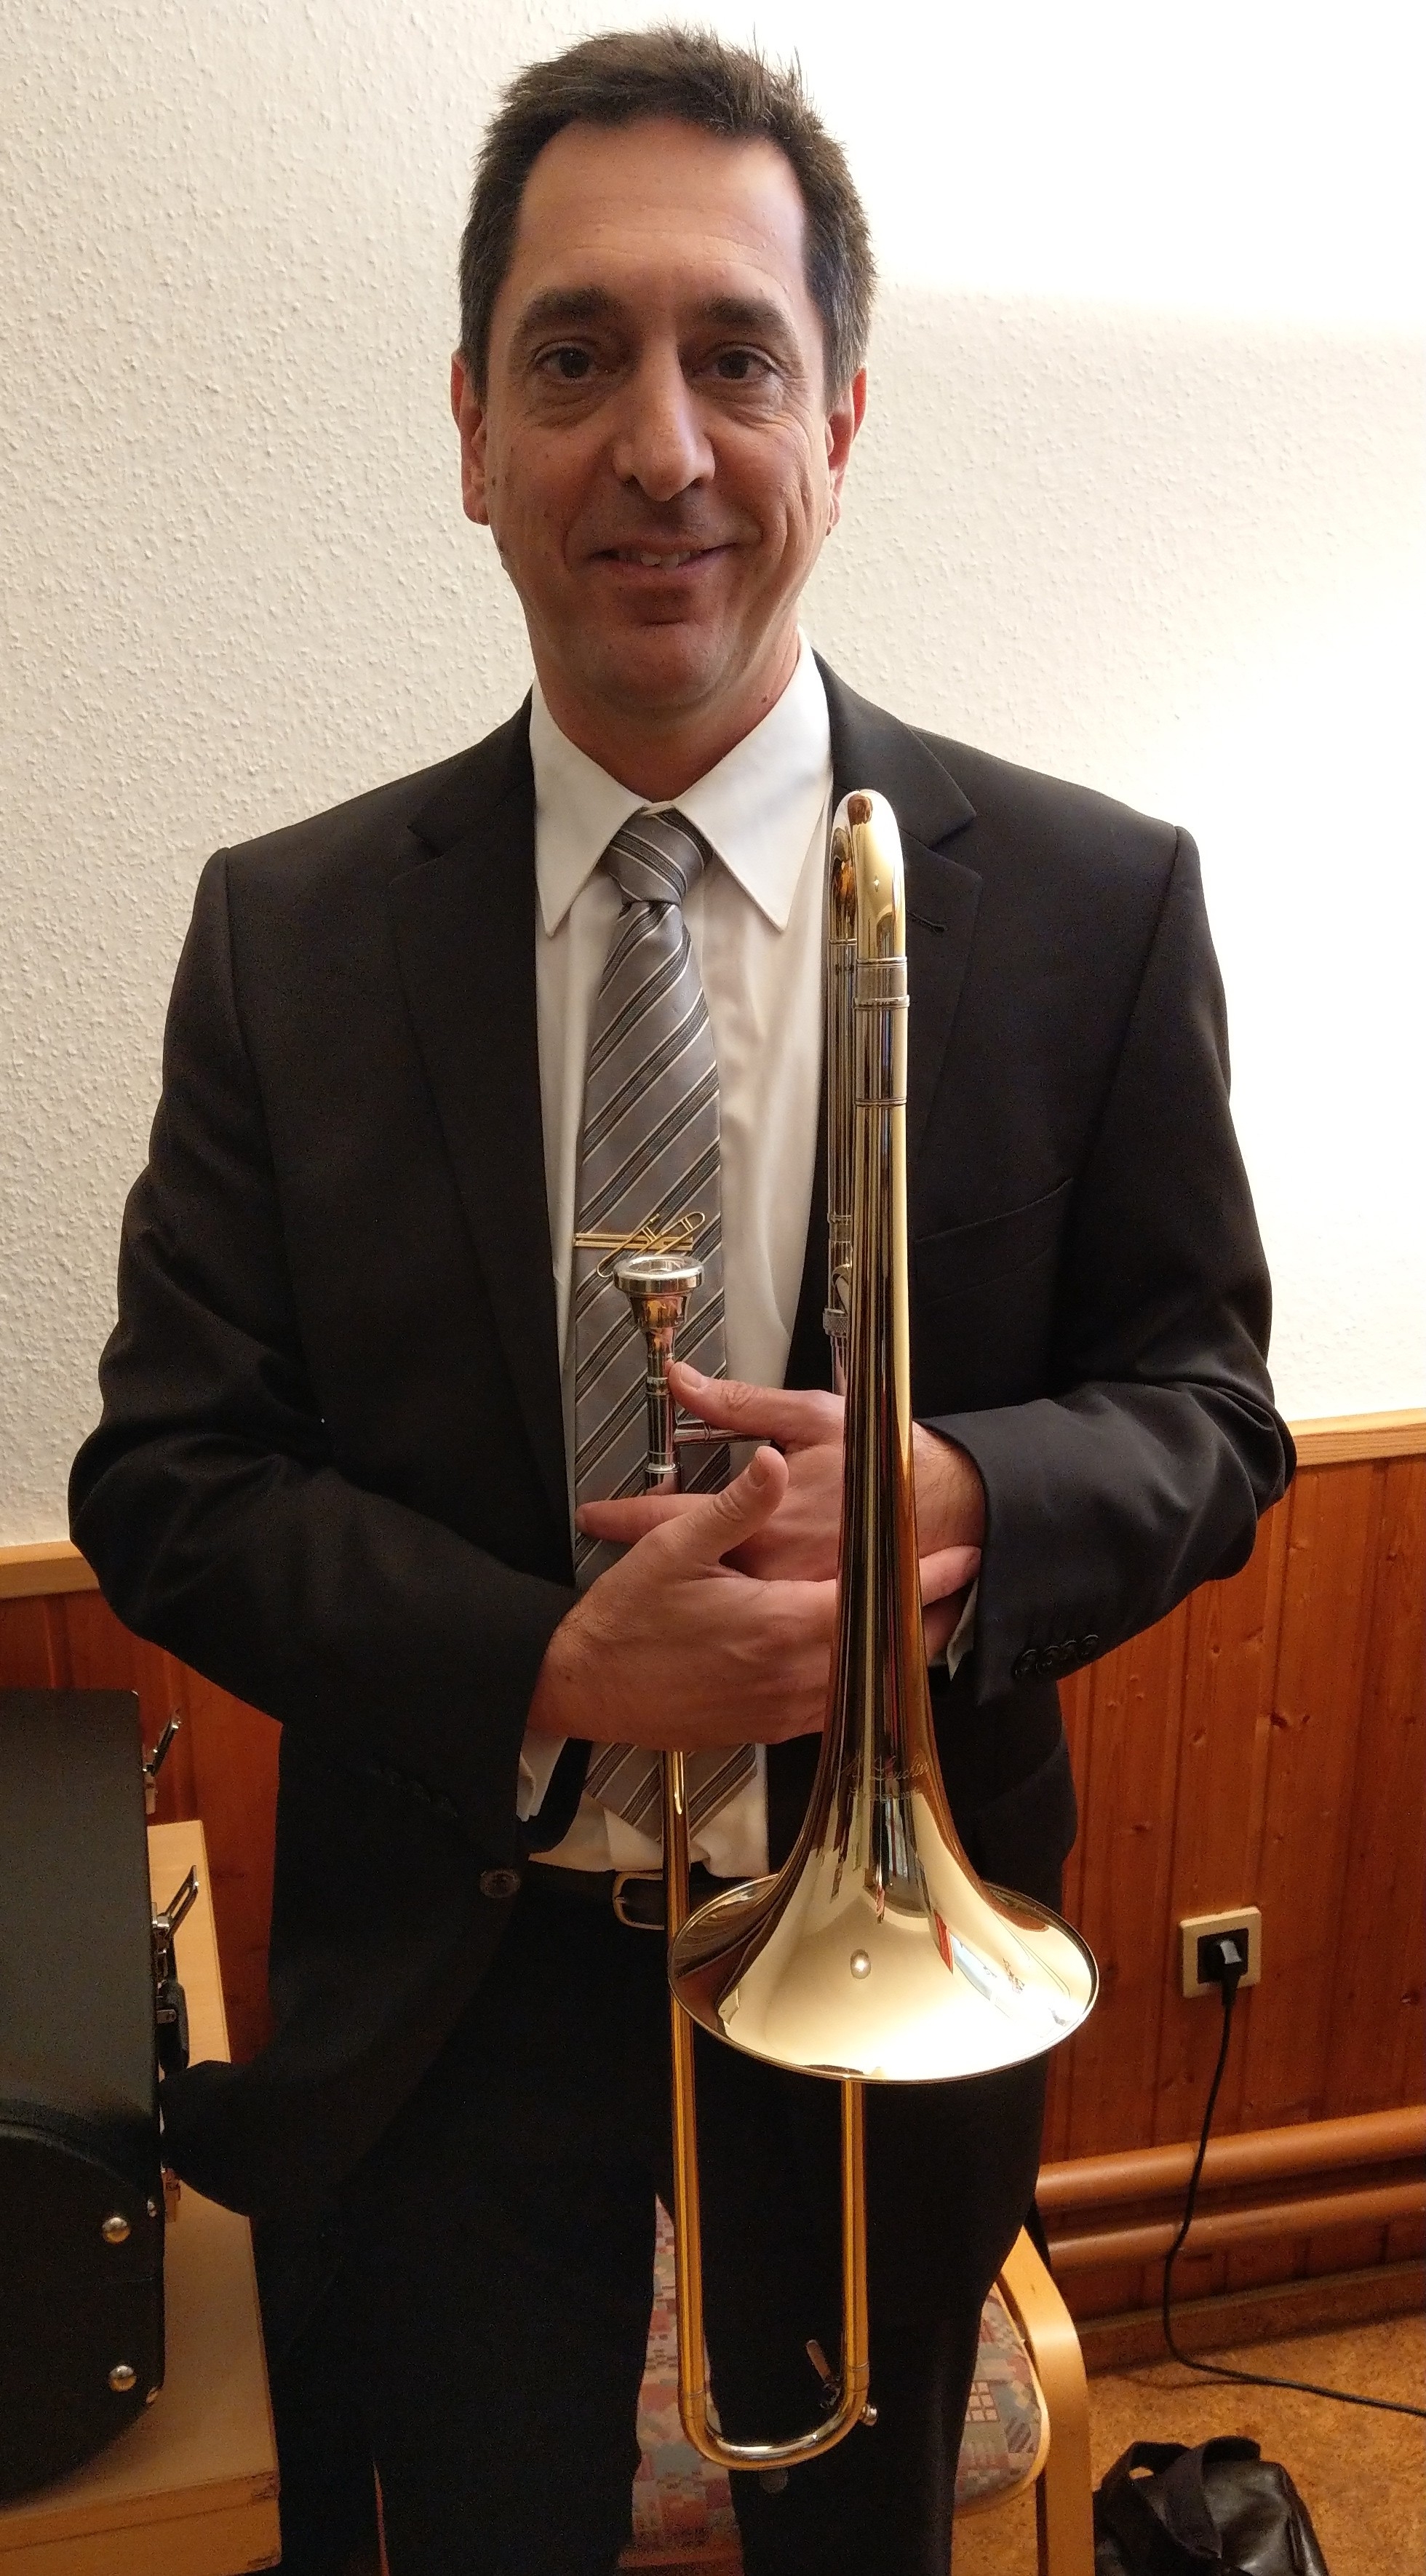 Fred Deitzmit avec le trombone alto de Manfred Leuchter